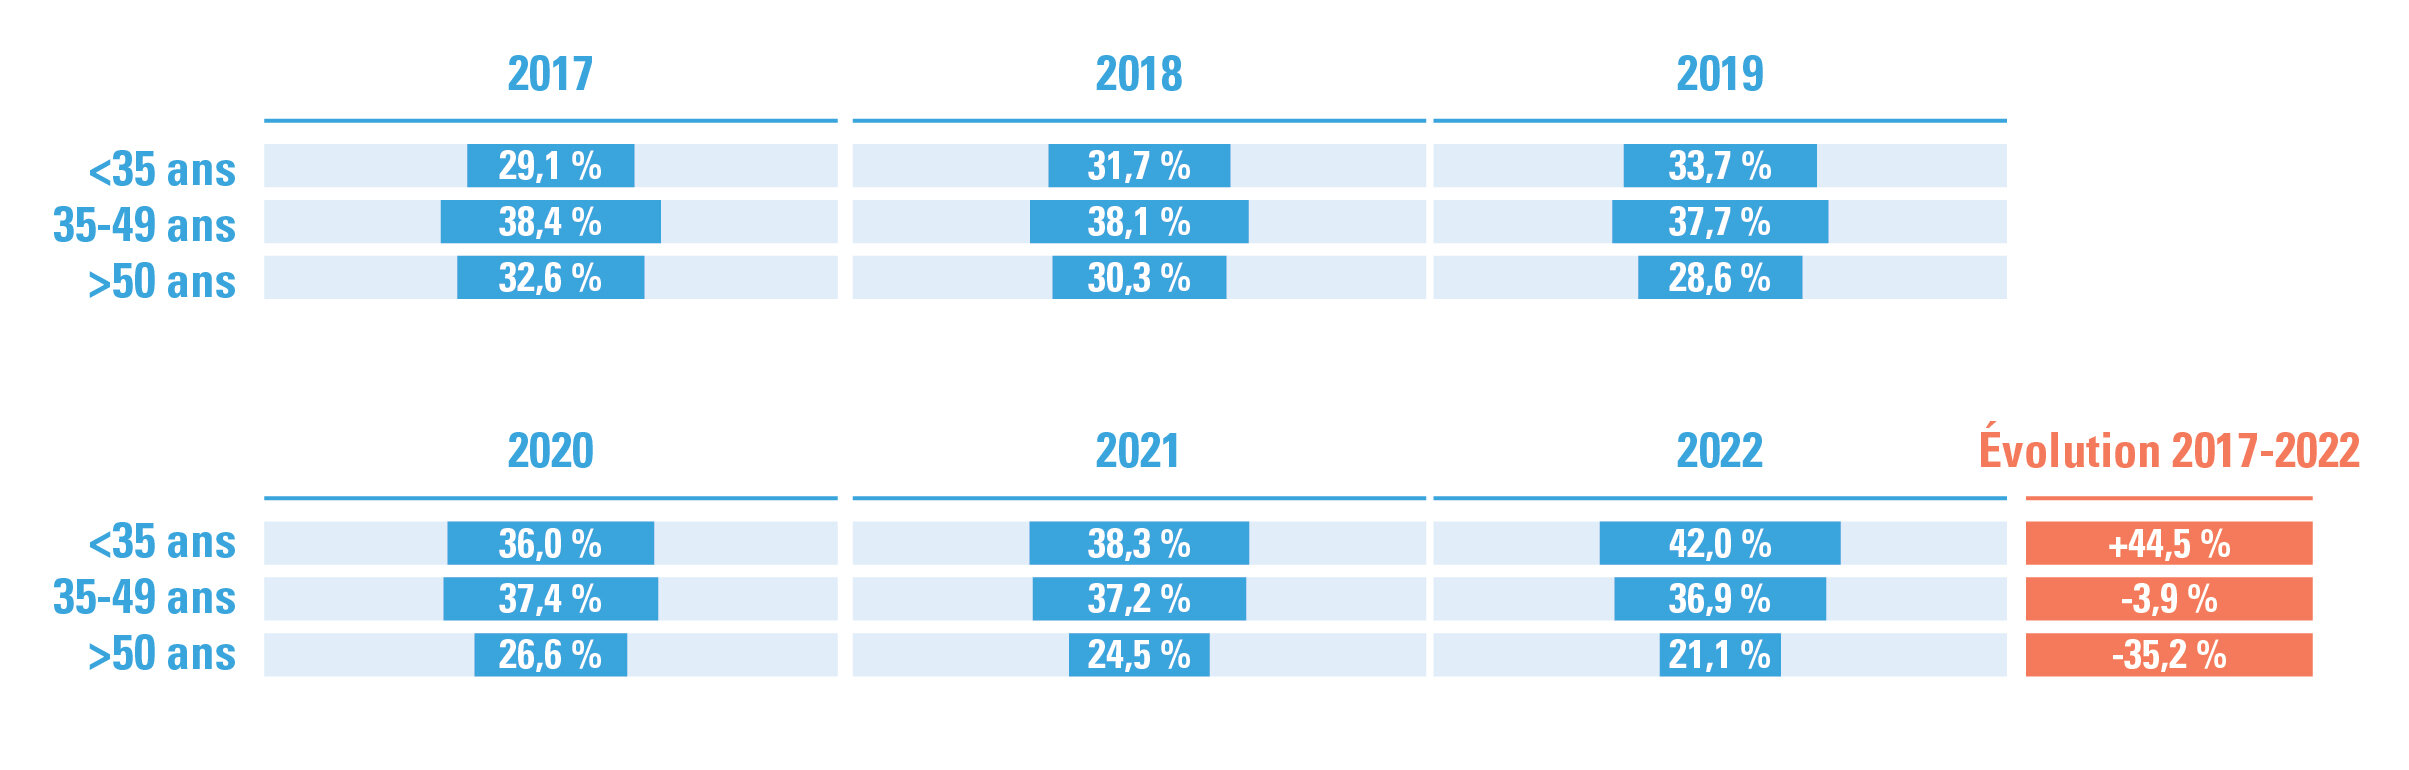 répartition des catégories d’âge + évolution 2017-2022